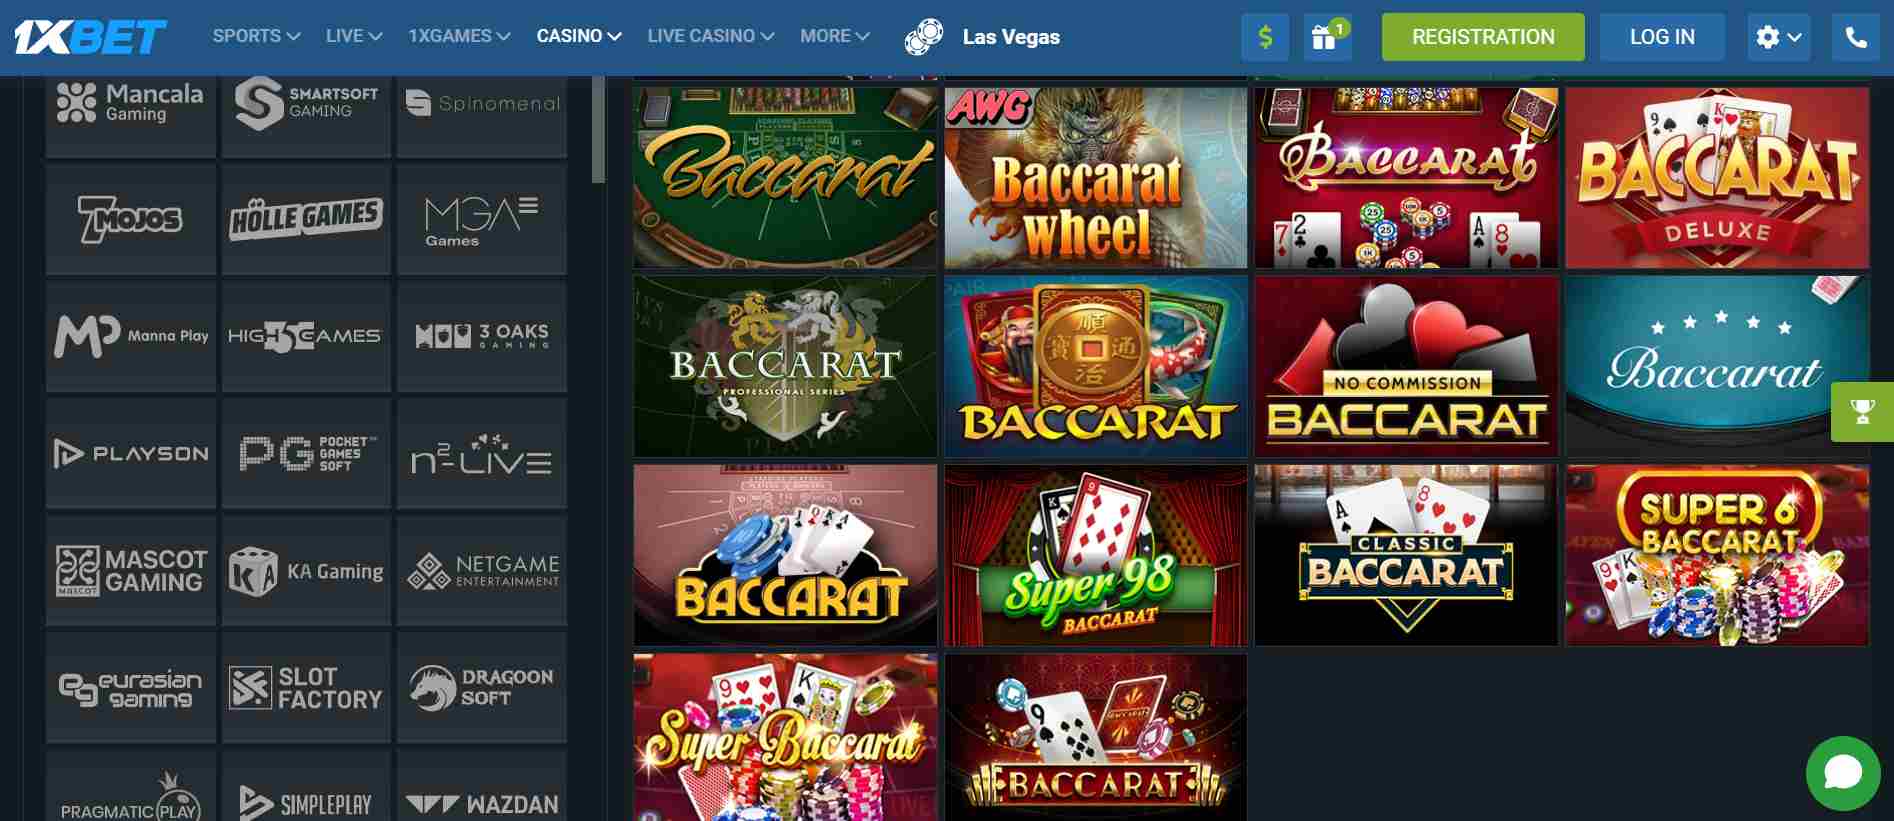 1xbet Indonesia casino games